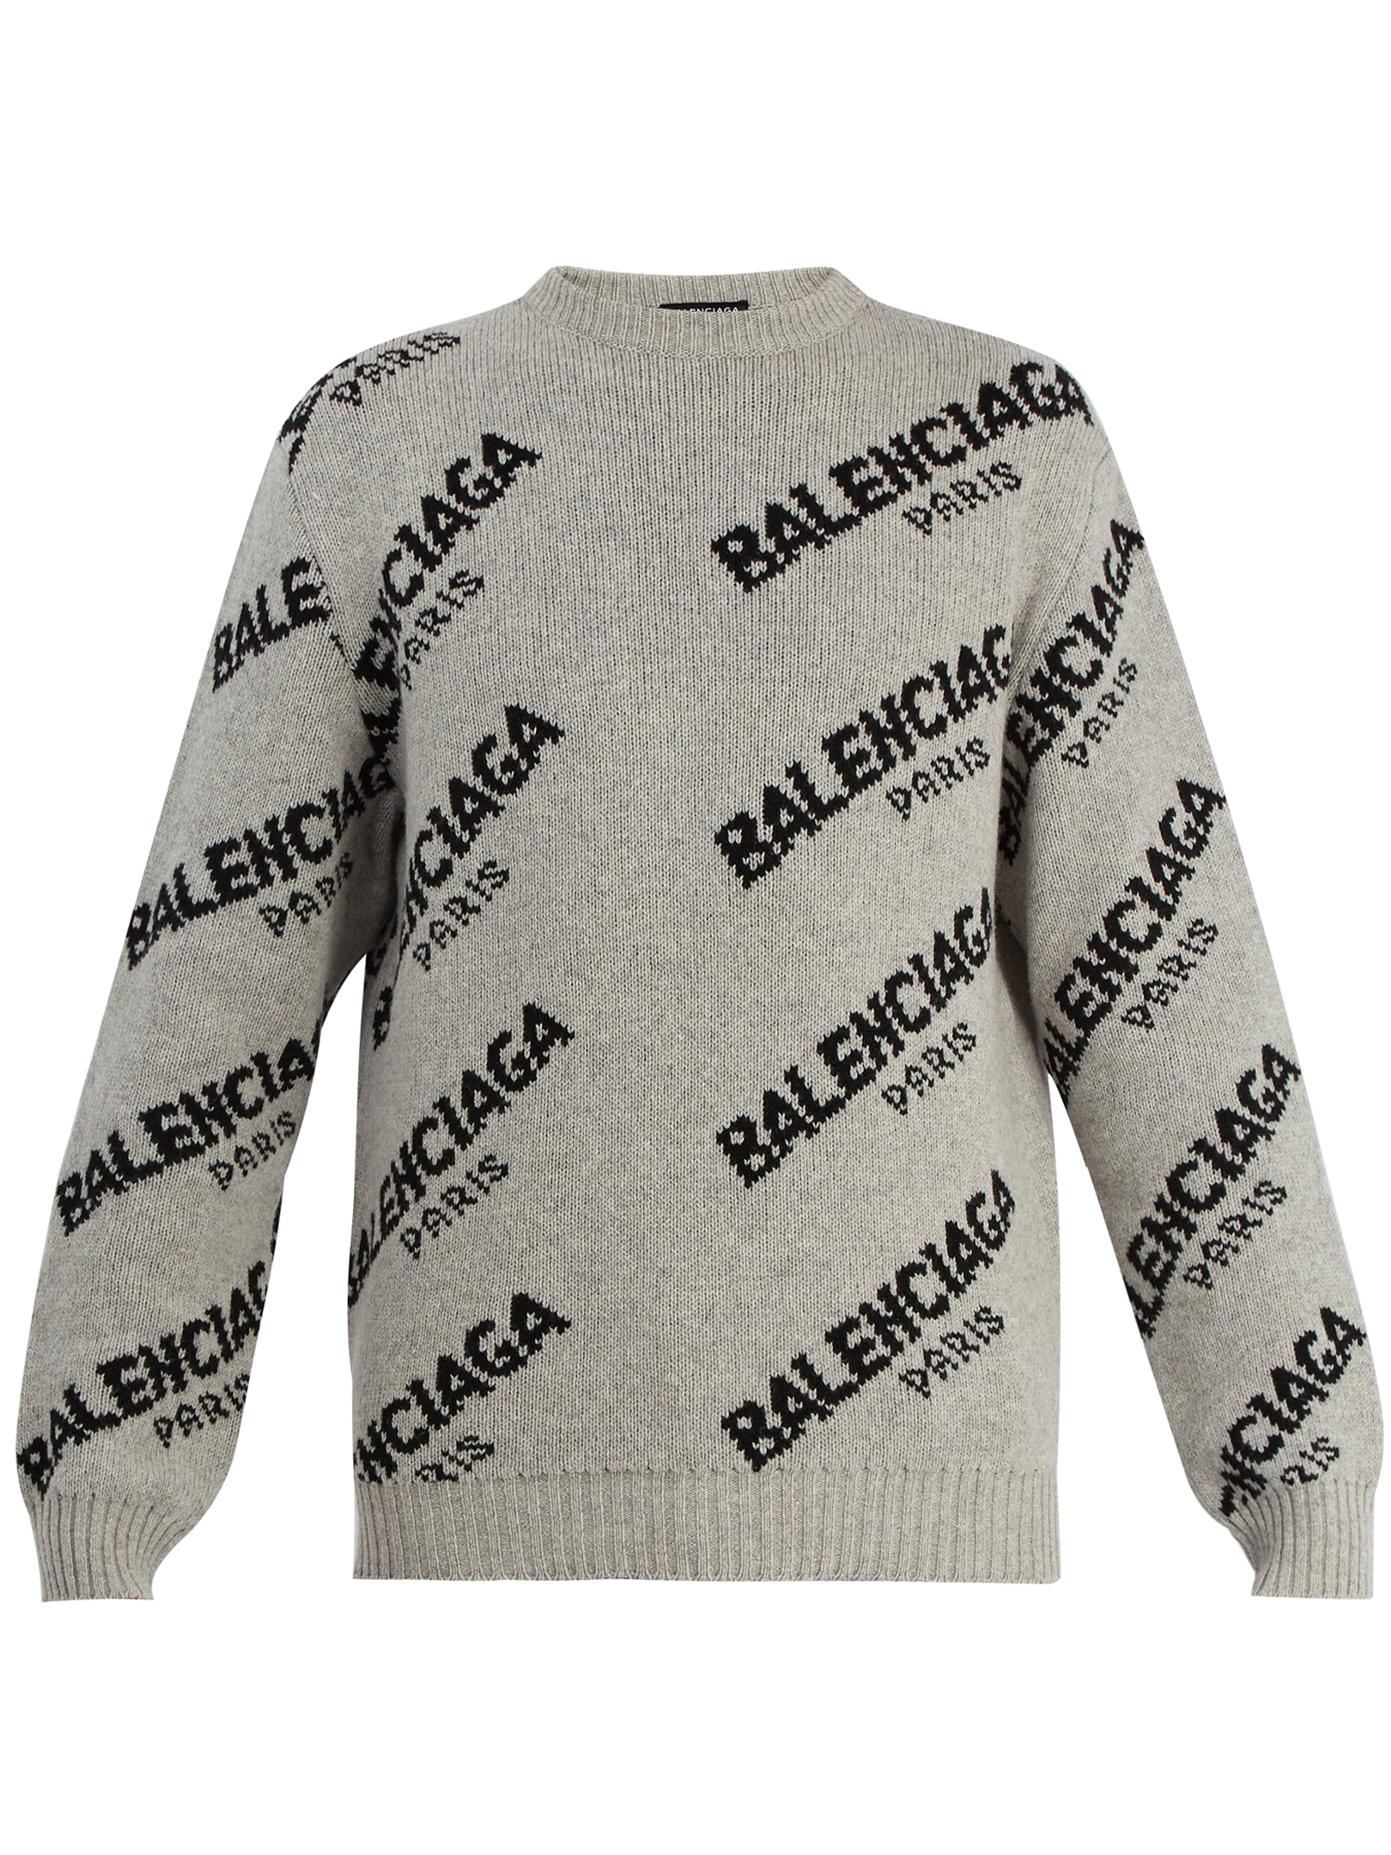 balenciaga logo knitted sweater